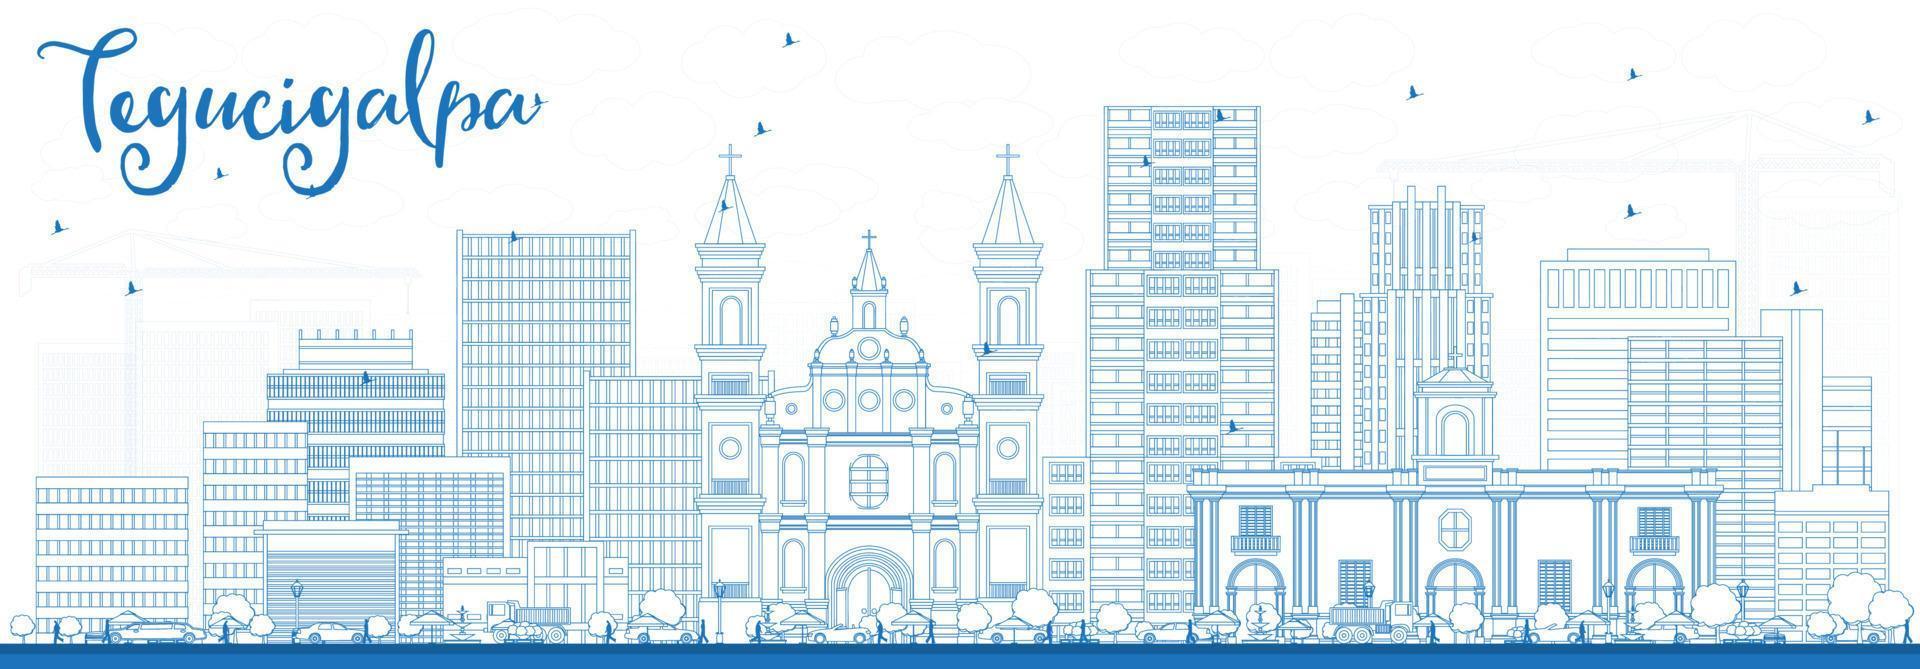 delineie o horizonte de tegucigalpa com edifícios azuis. vetor